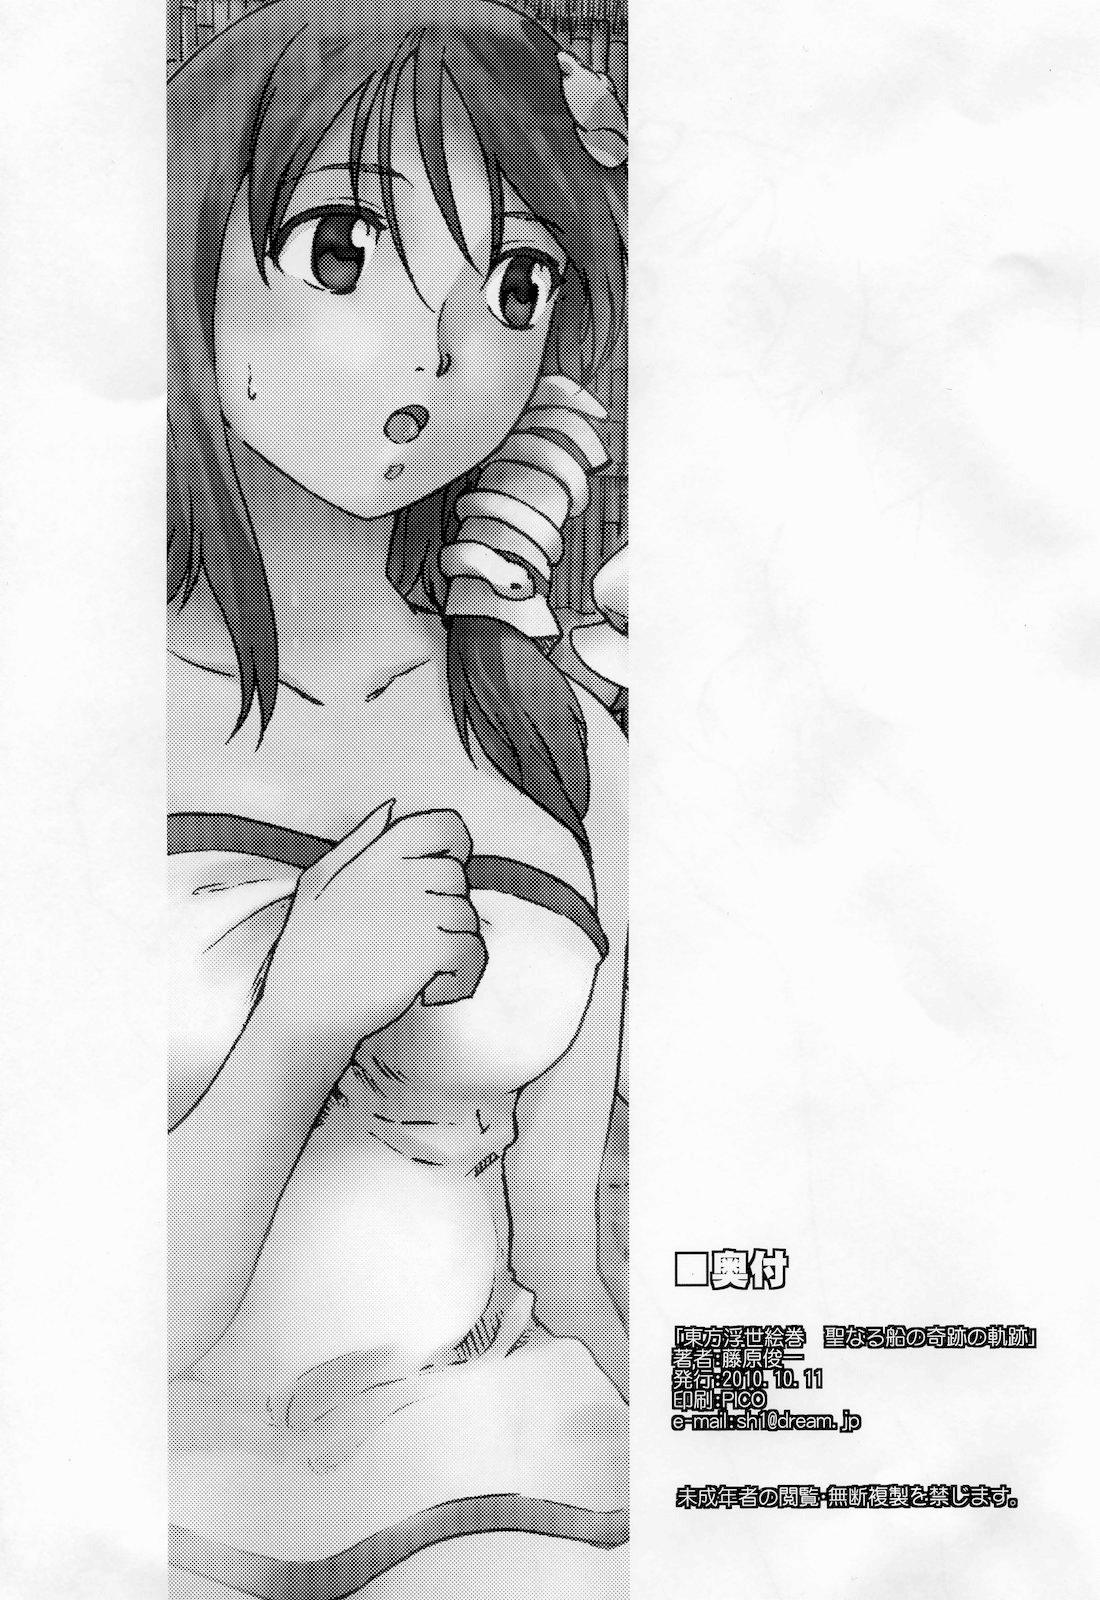 Pussy Licking Touhou Ukiyo Emaki 「Seinaru Fune no Kiseki no Kiseki」 - Touhou project Petera - Page 22